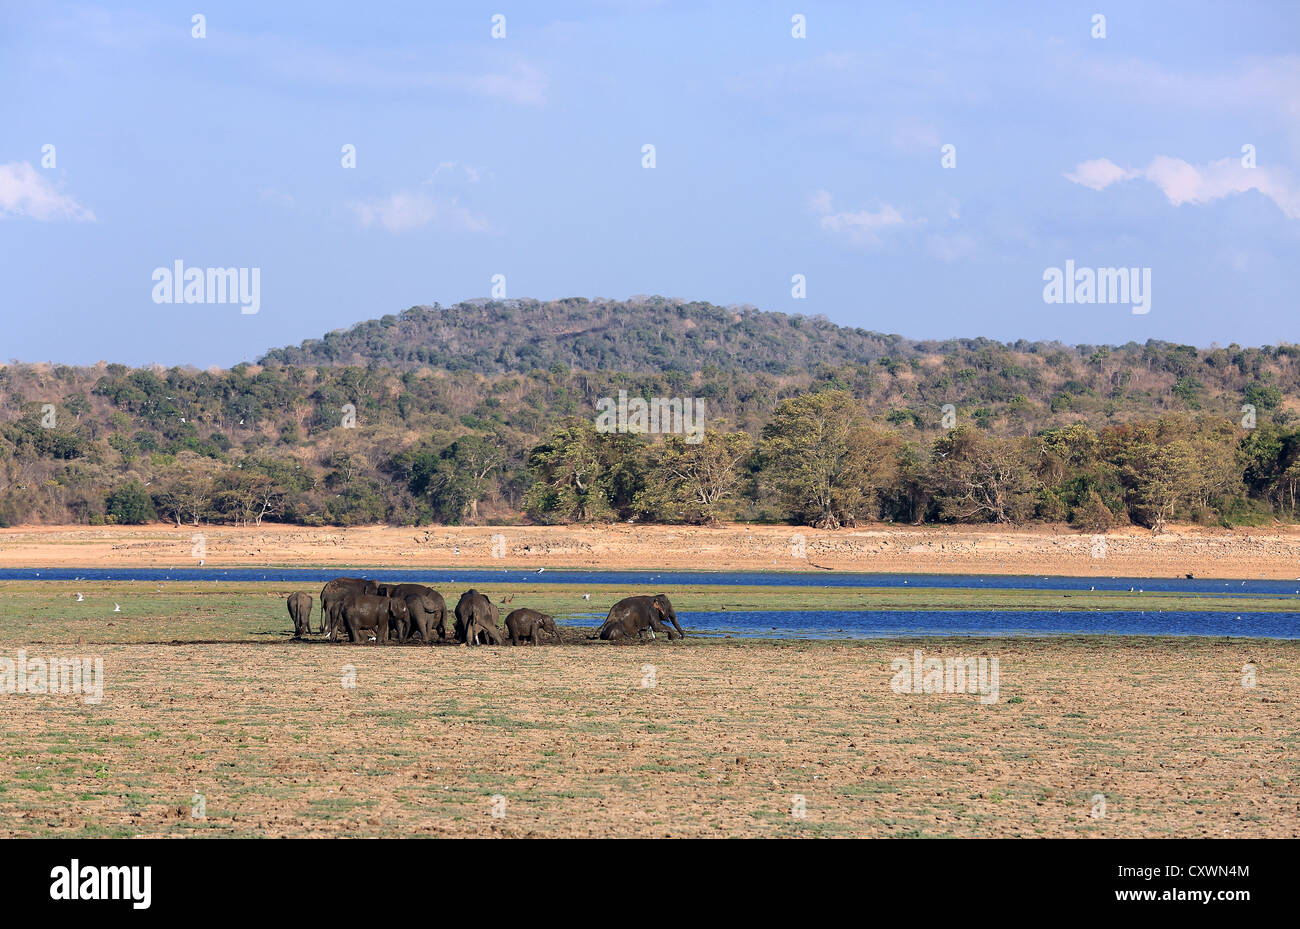 Manada de elefantes bañándose en una laguna en el Parque Nacional de Minneriya, Sri Lanka. Foto de stock